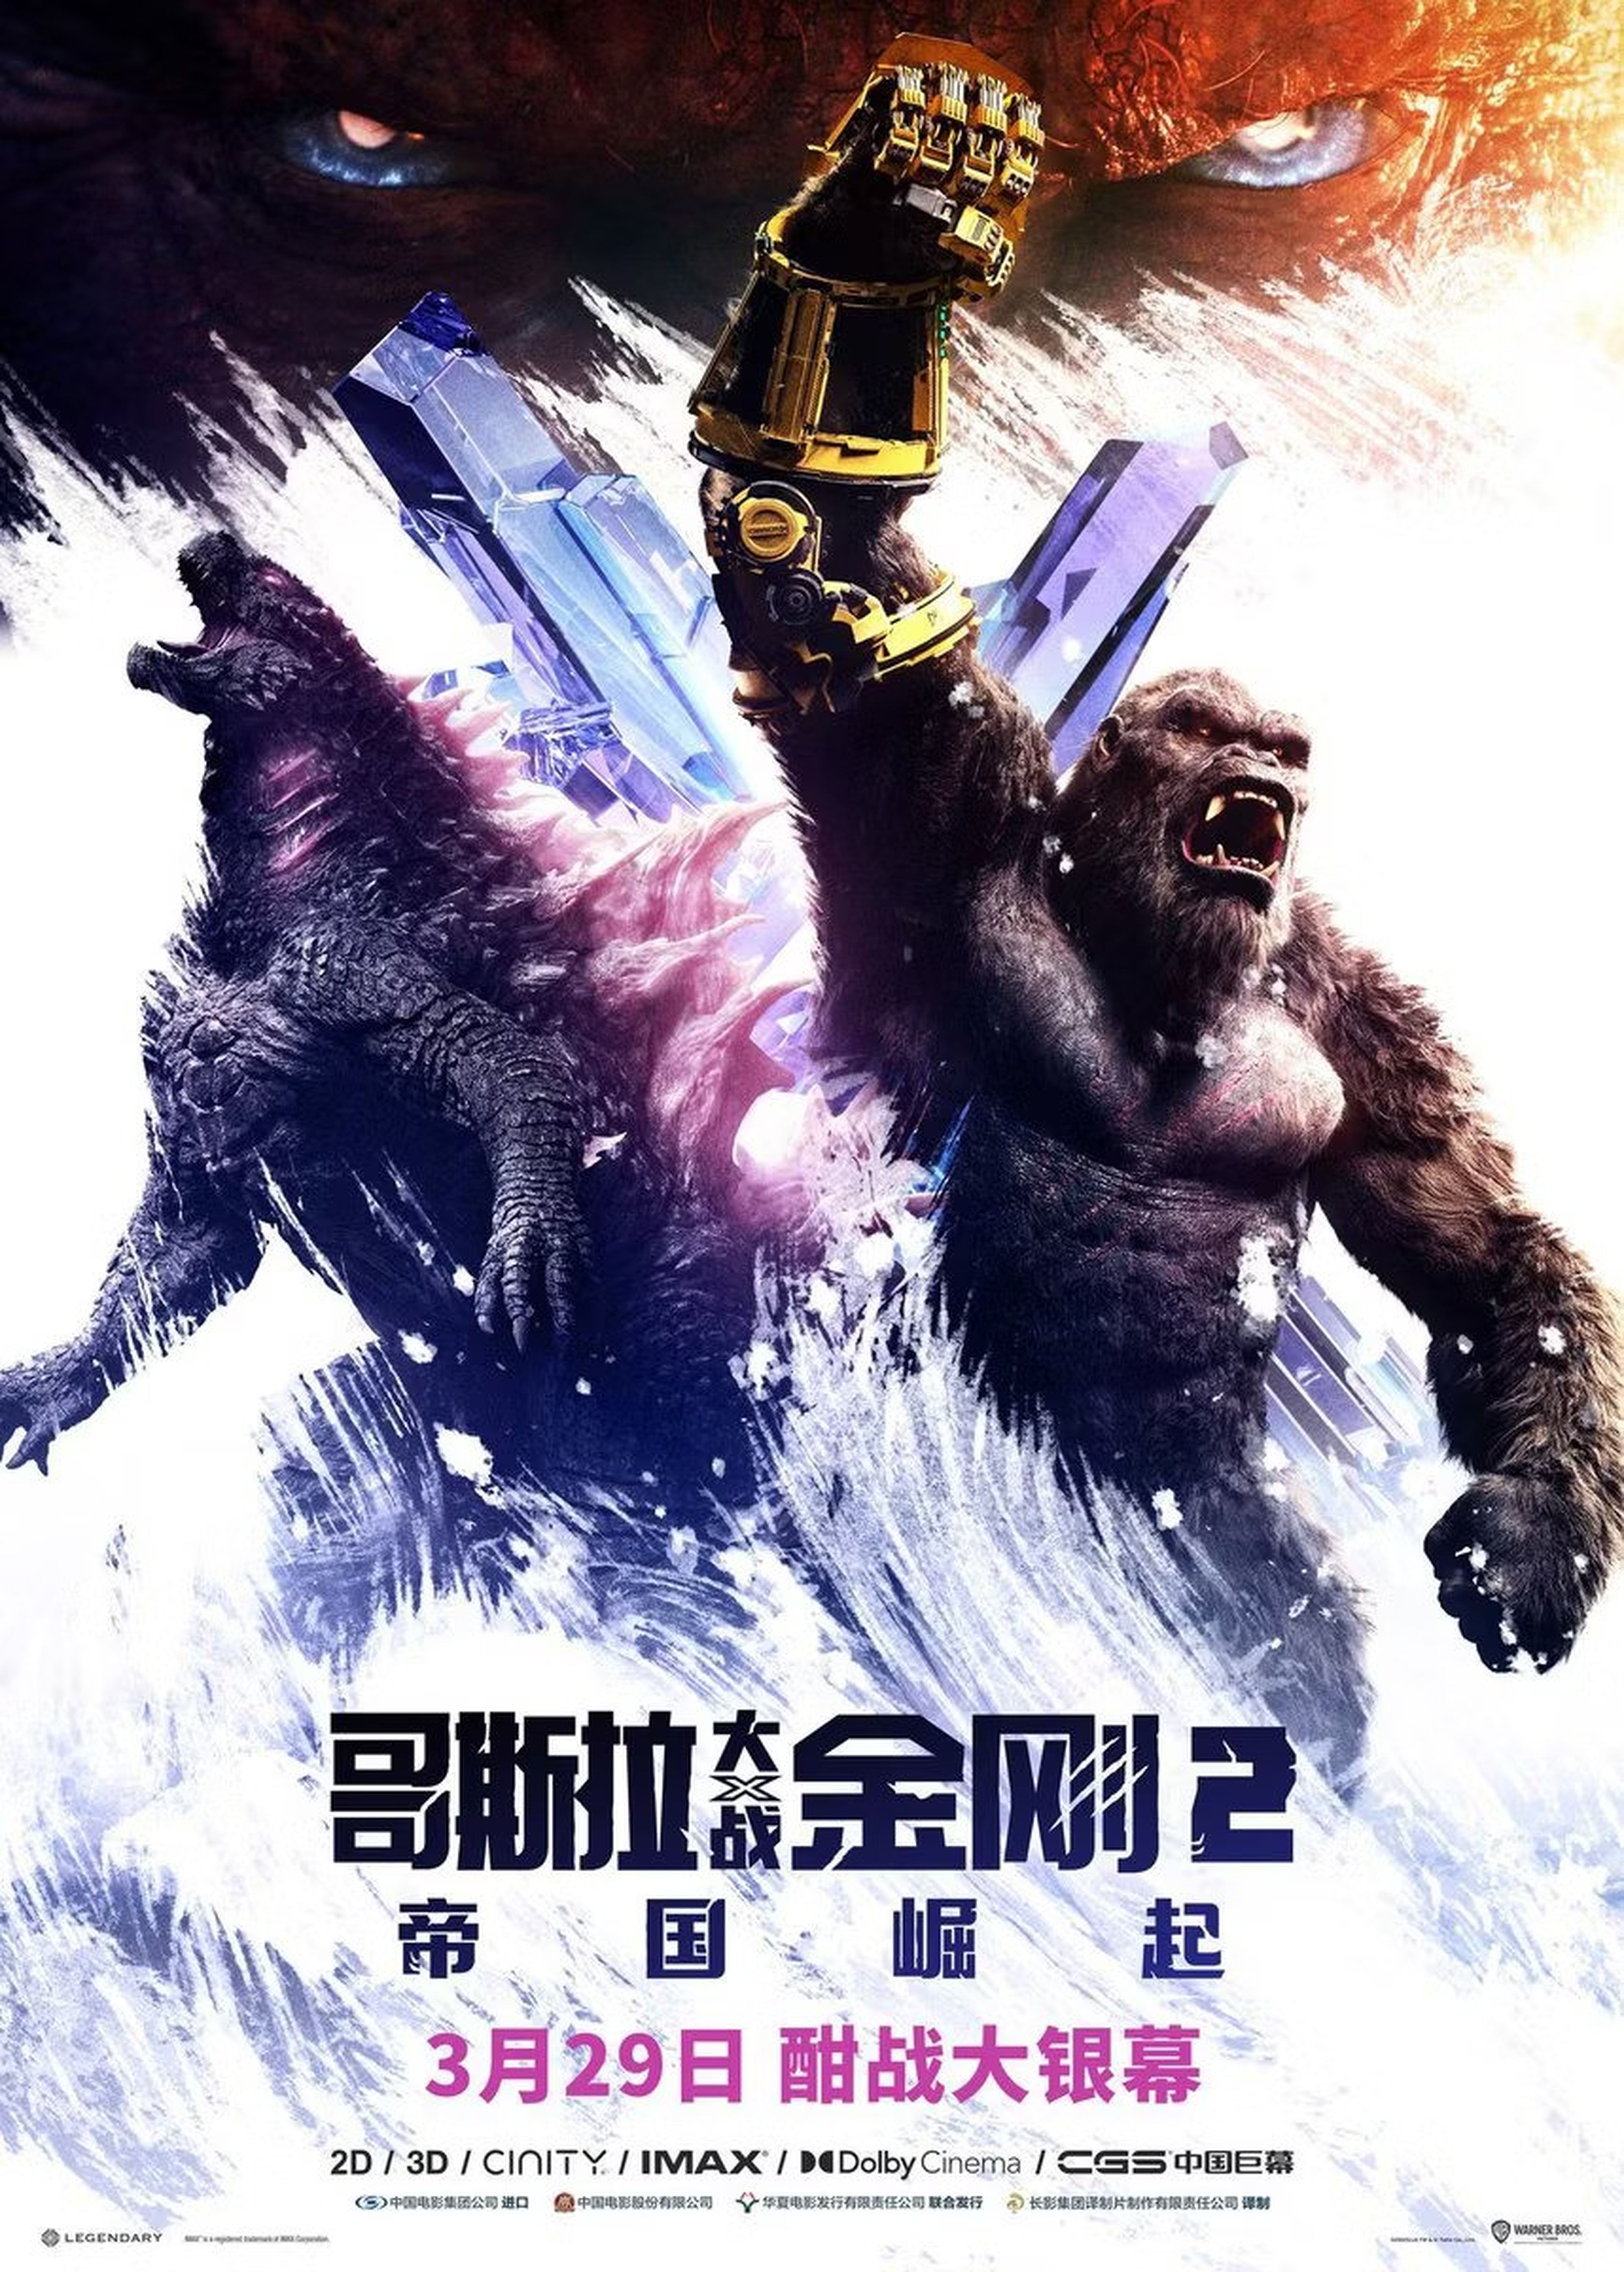 Nuevo tráiler de Godzilla y Kong El nuevo imperio, la continuación del